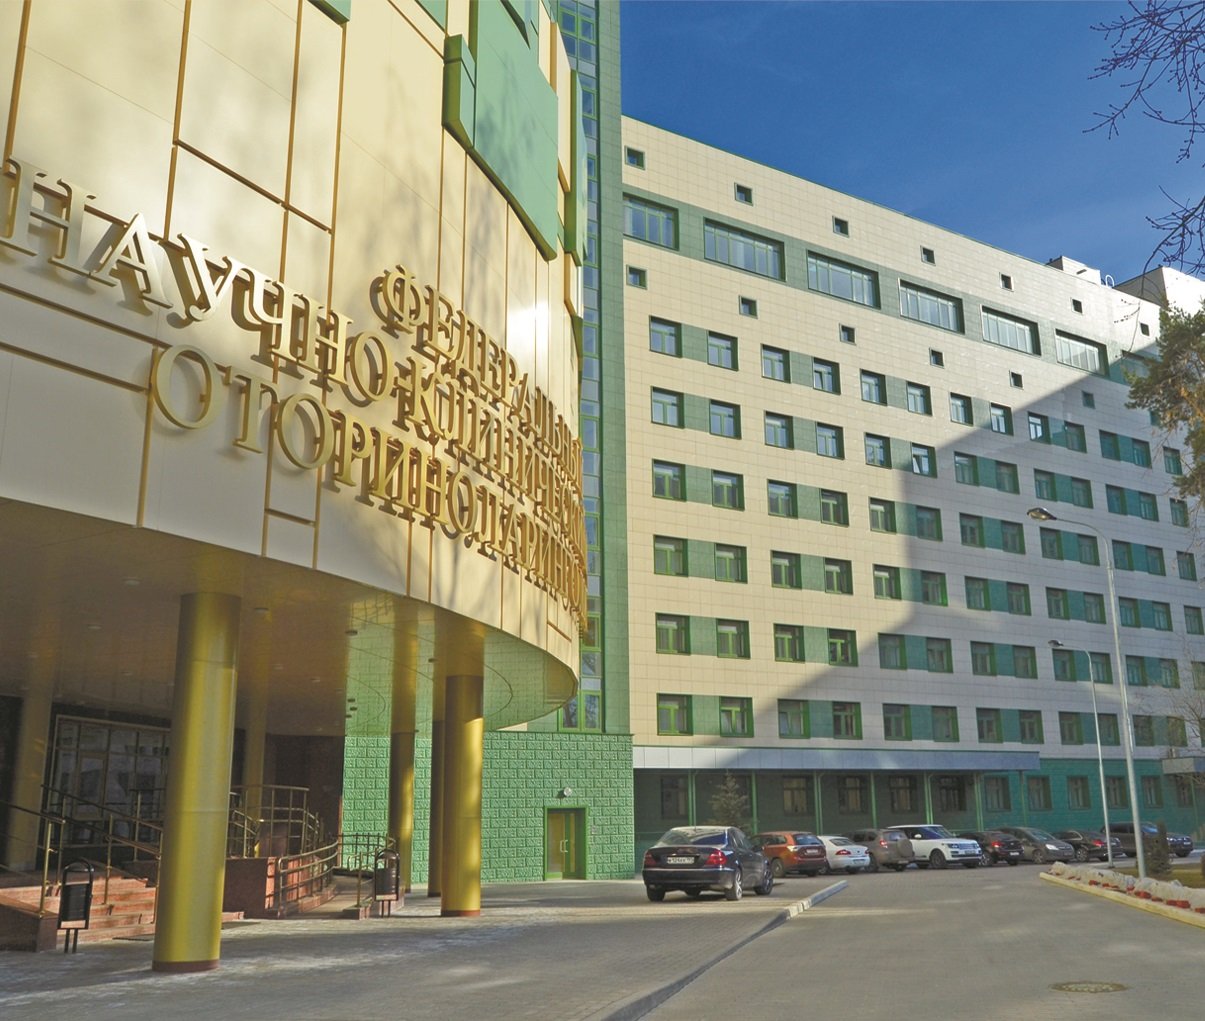 Национальный центр оториноларингологии фмба россии